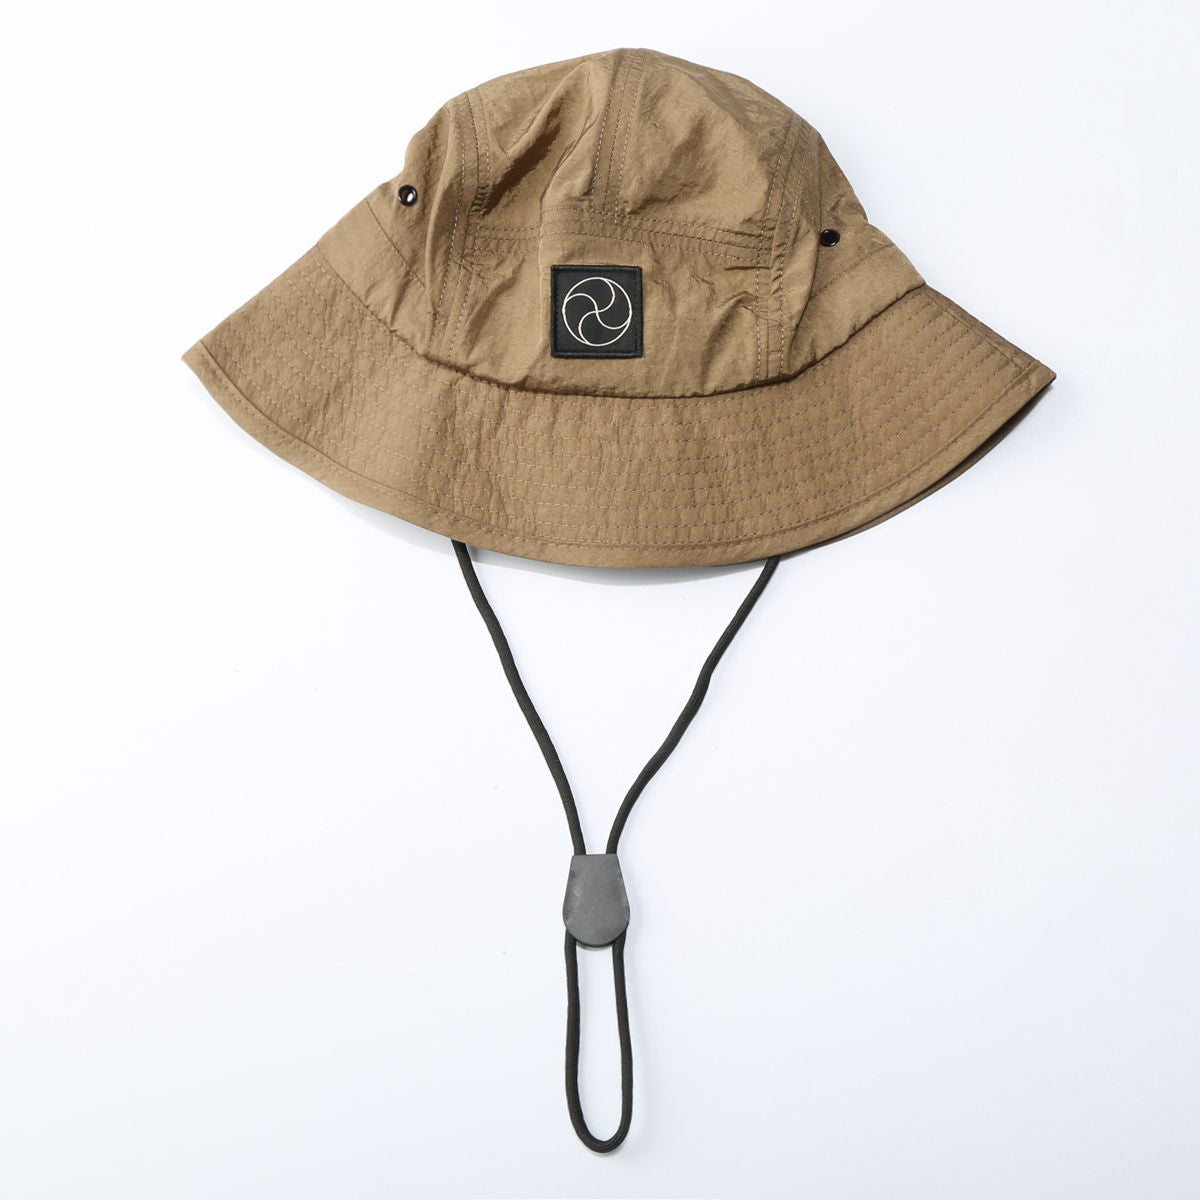 Sombreros informales con sombrilla: marca Tide de moda para hombres y mujeres